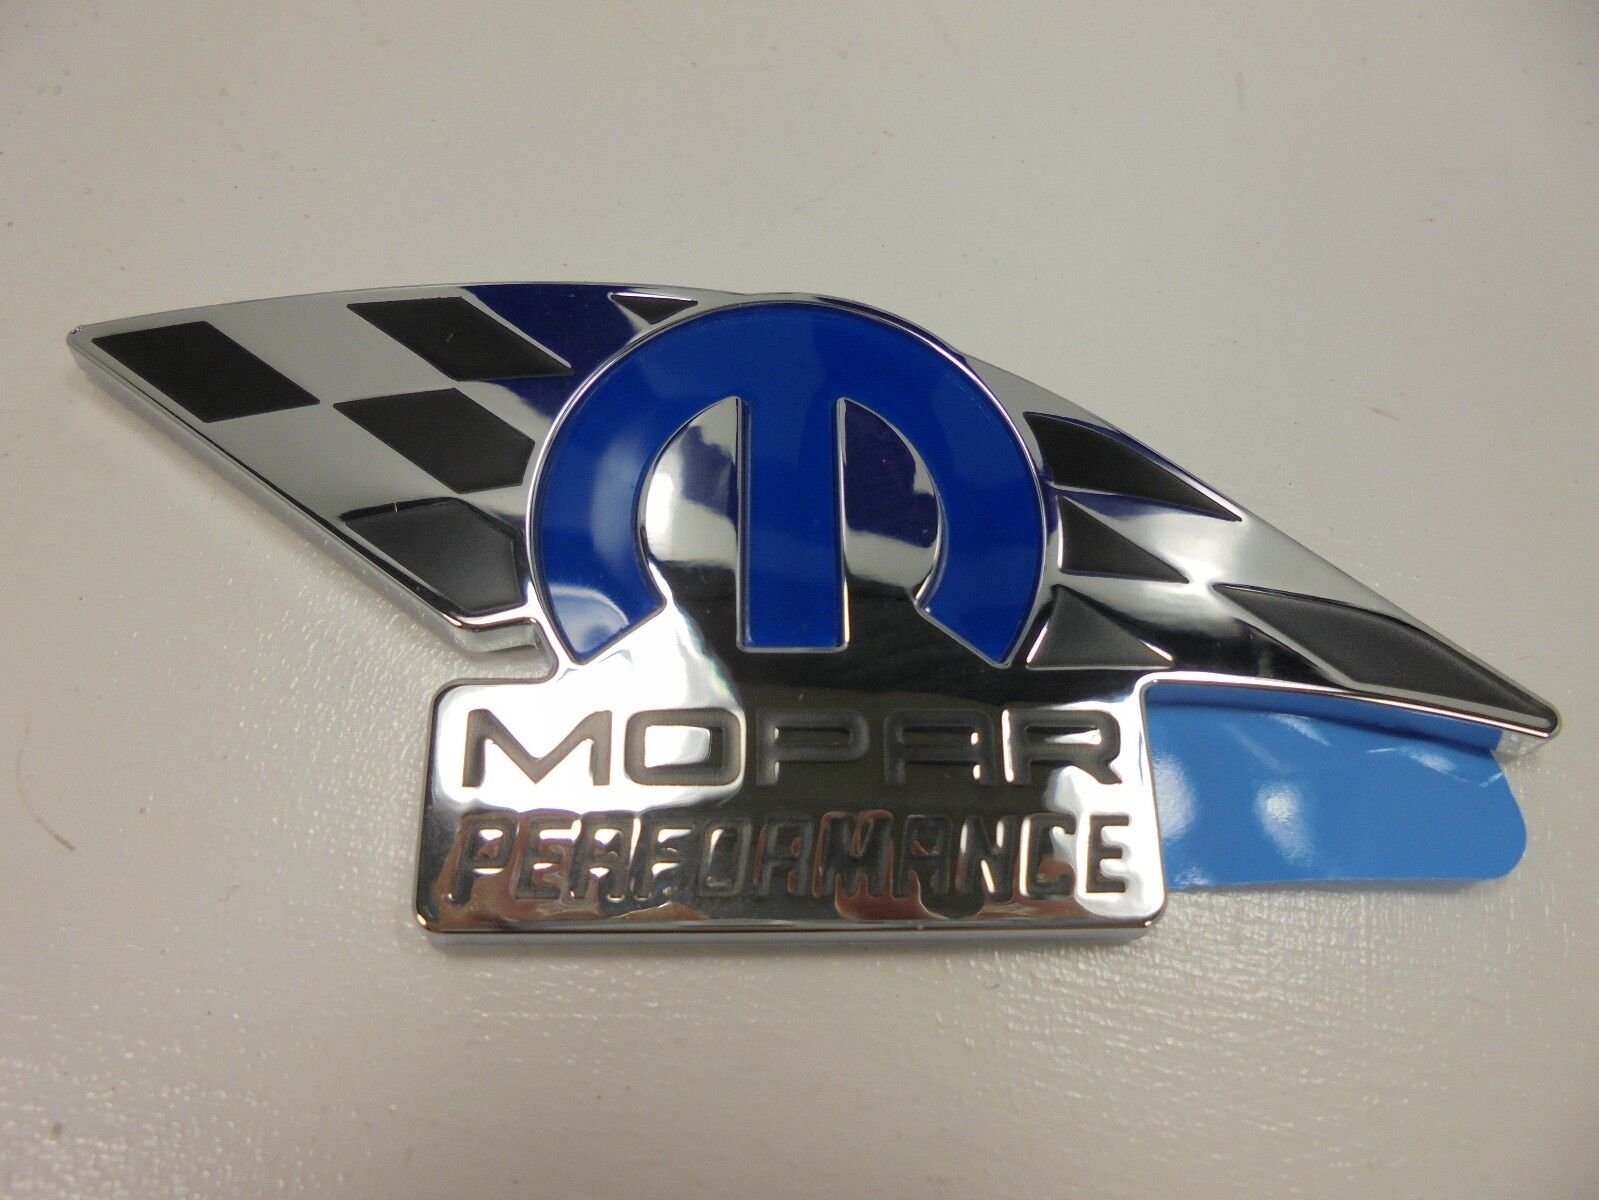 10-16 Challenger Charger 300 New Mopar Performance Emblem Badge Nameplate Oem